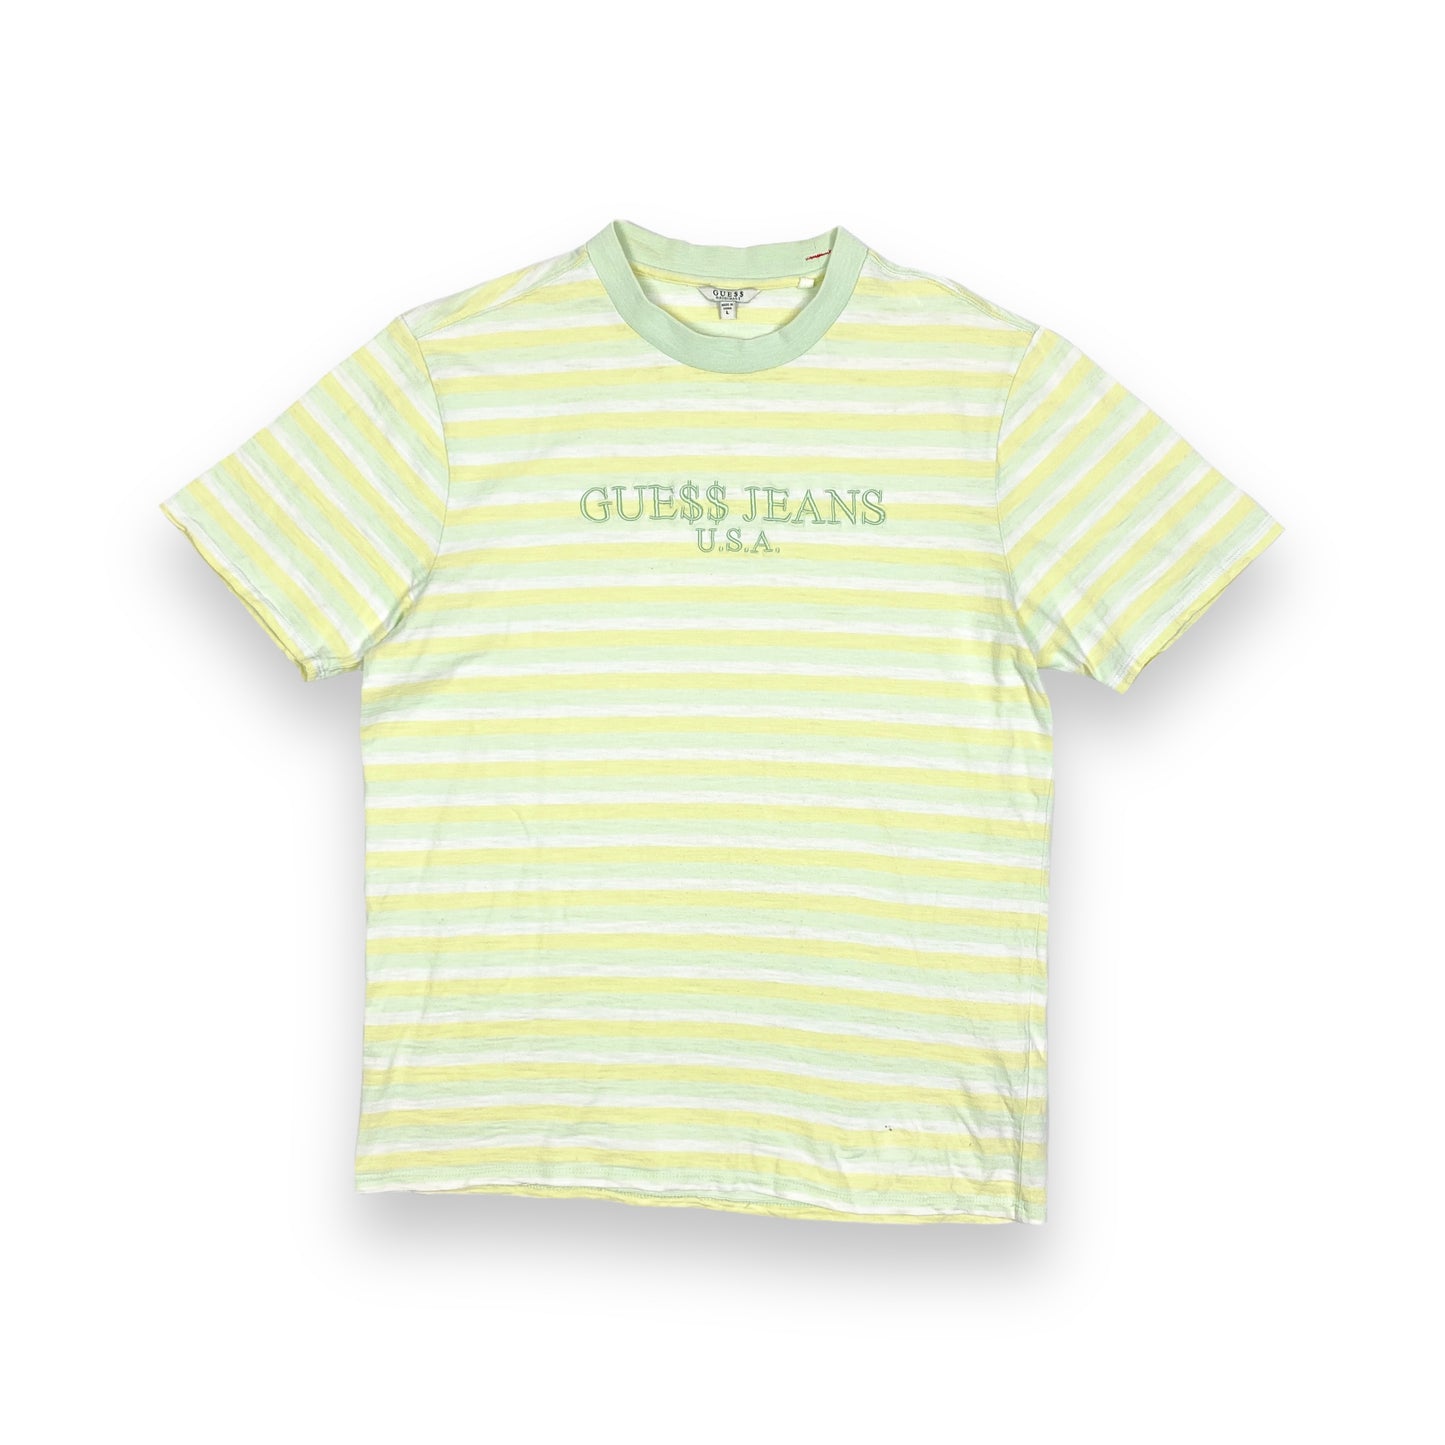 GUESS x A$AP ROCKY Striped T-Shirt